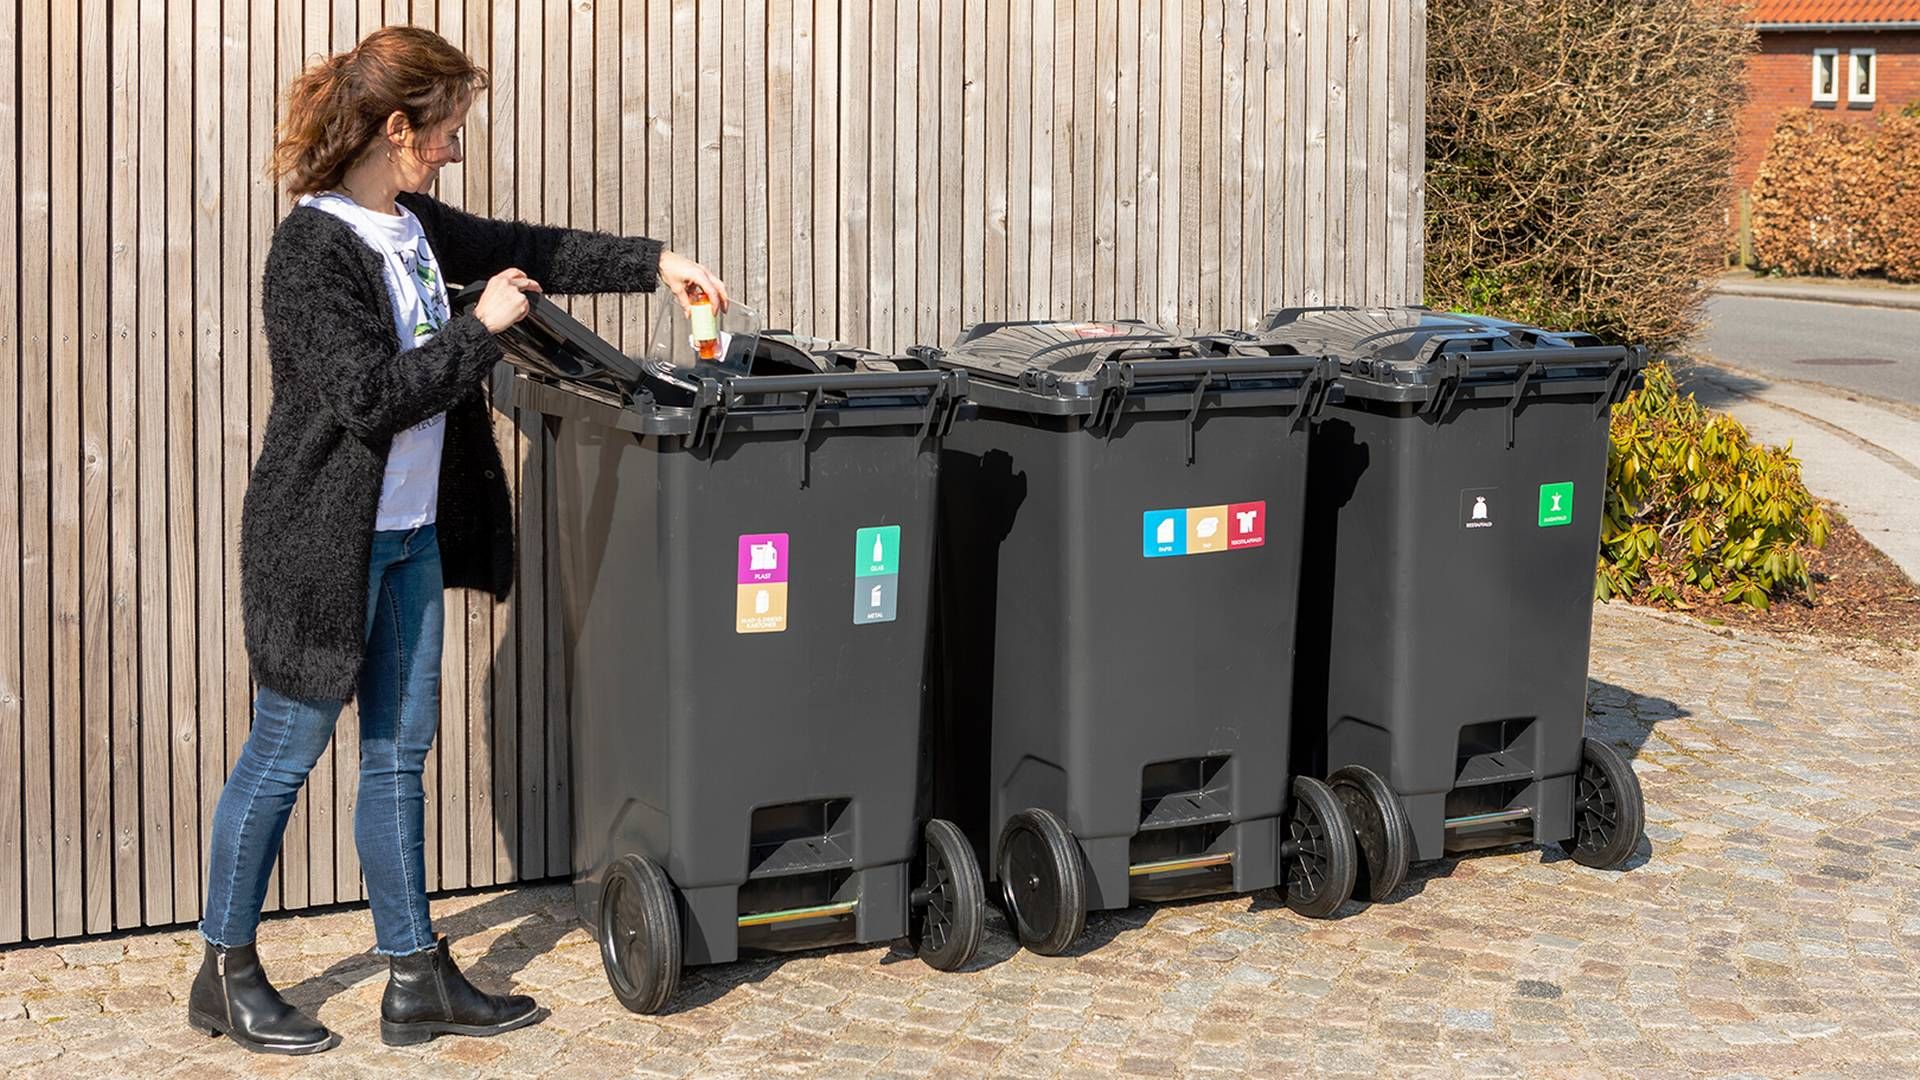 I fremtiden kan det være en realitet, at disse skraldespande slet ikke er aktuelle, hvis affaldssorteringen udliciteres til robotter. | Foto: Kredsløb/pr